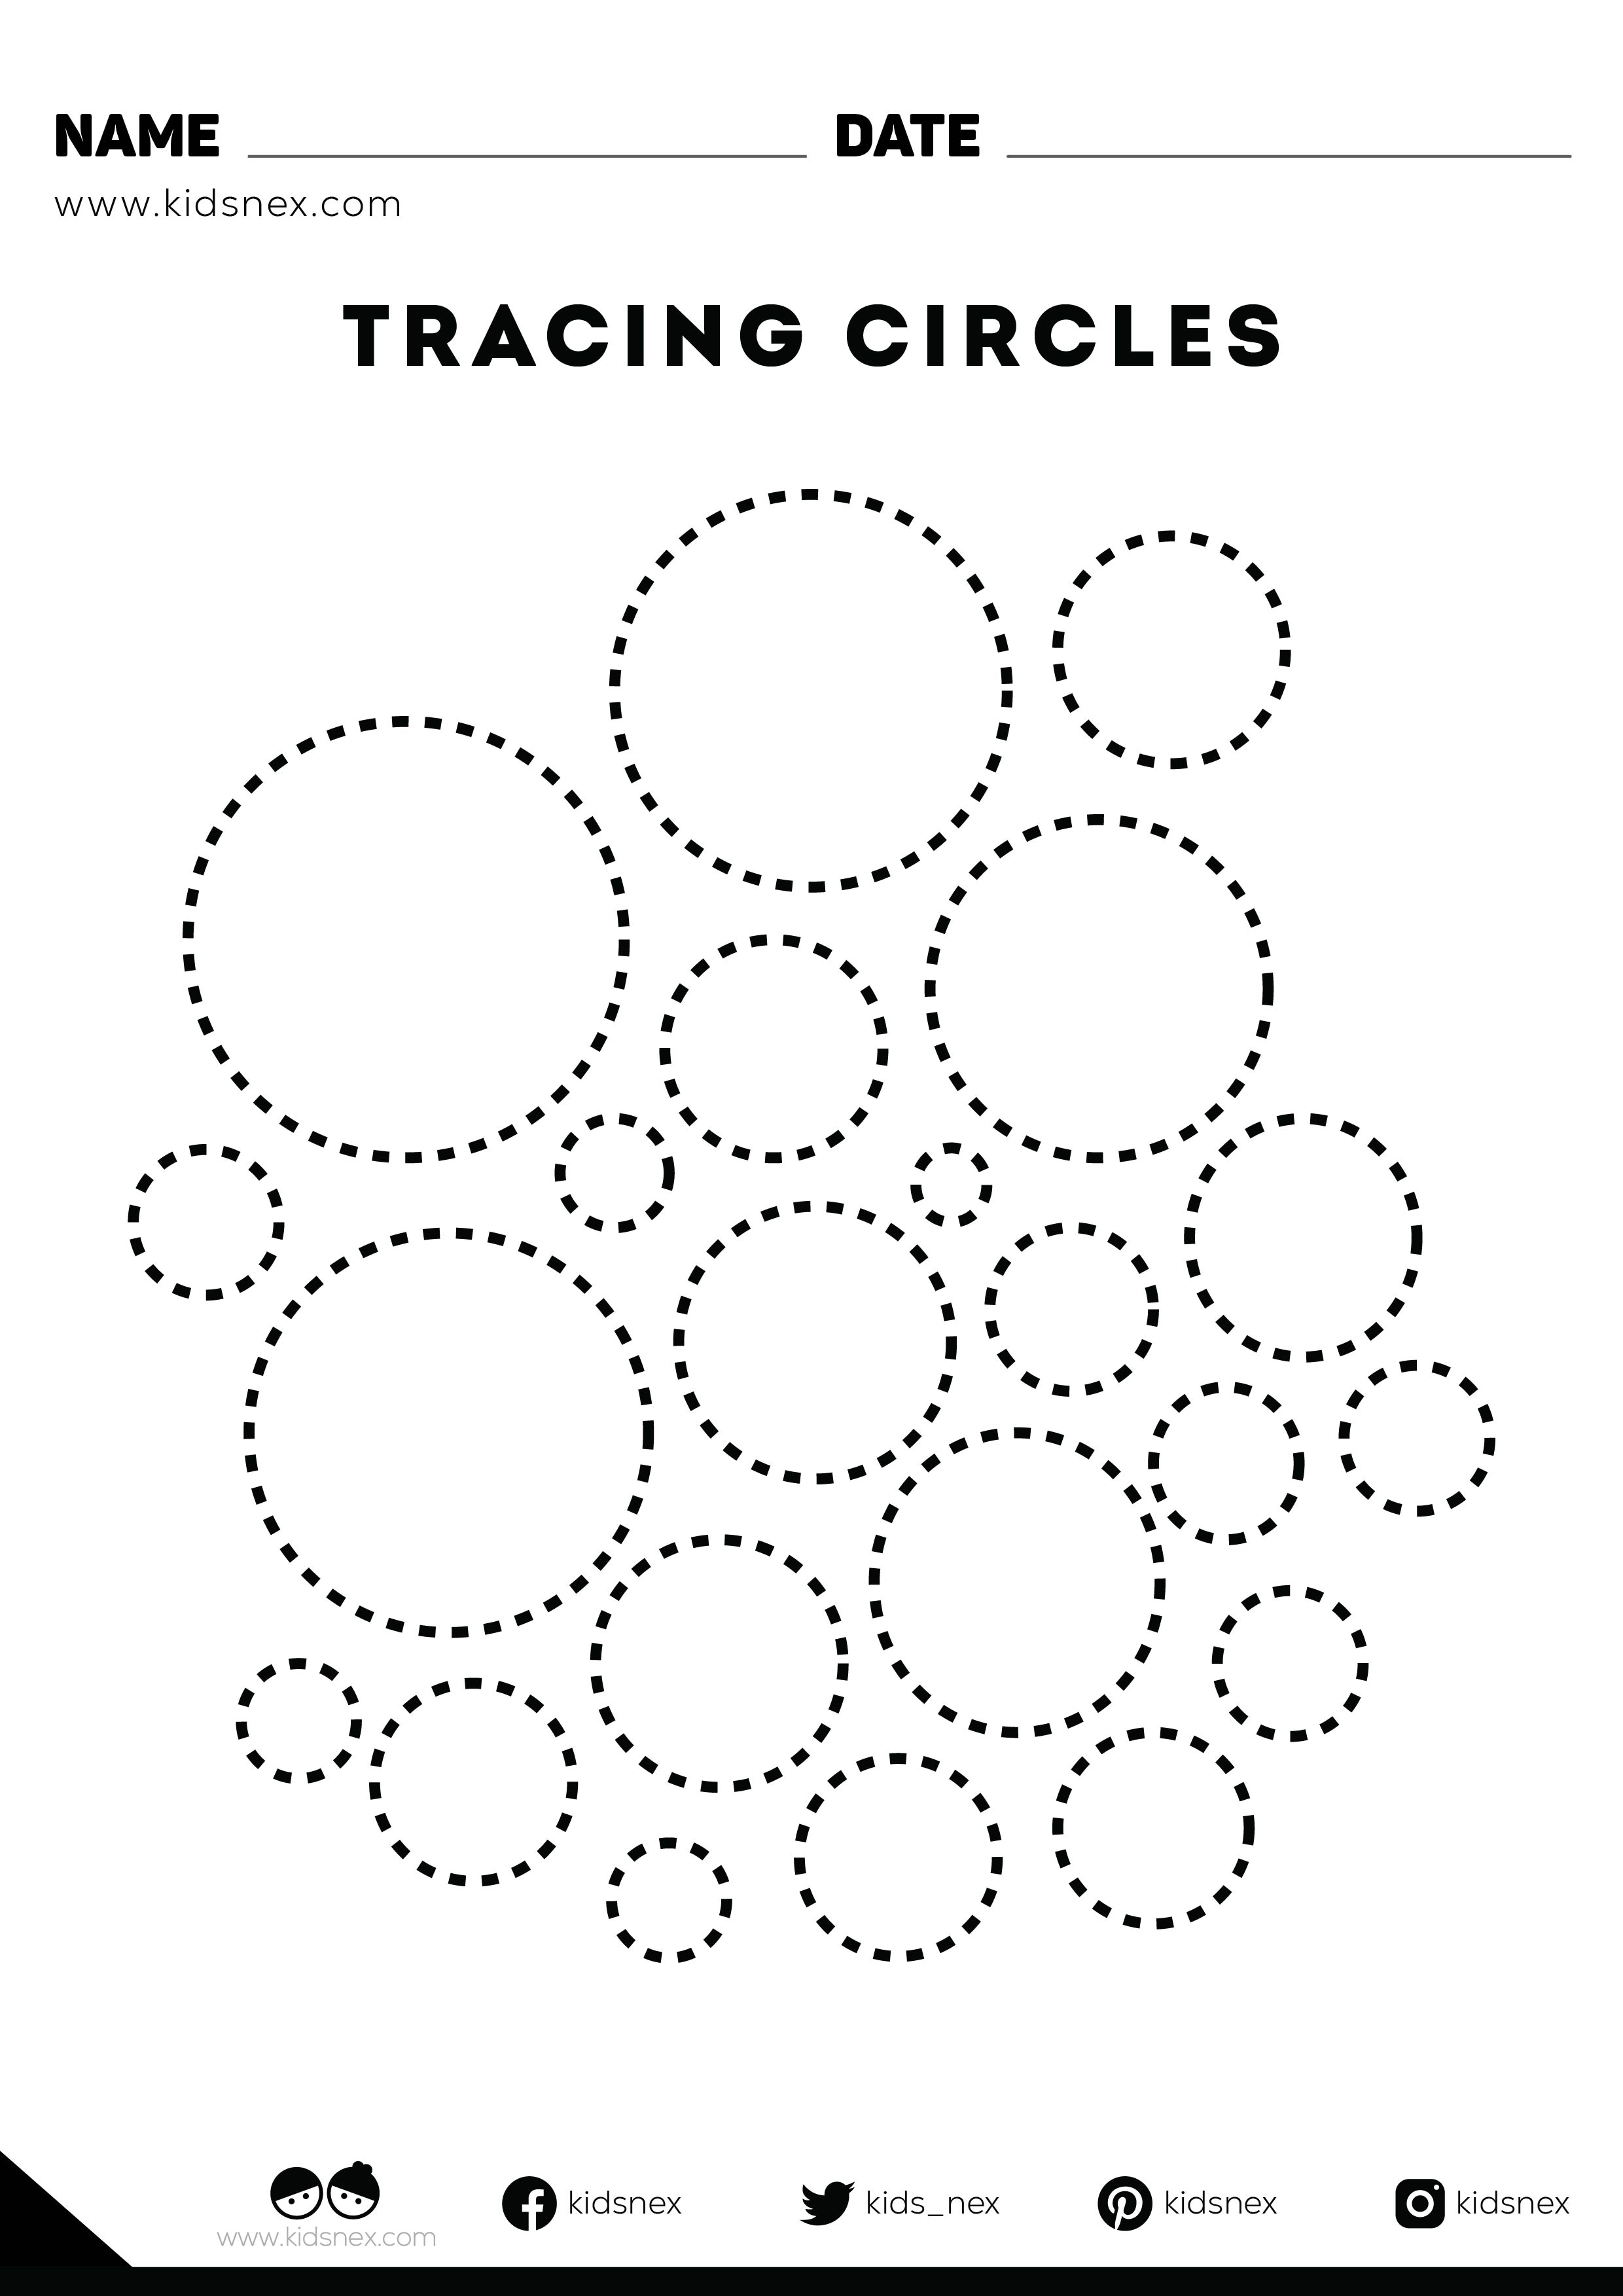 Tracing circles shapes